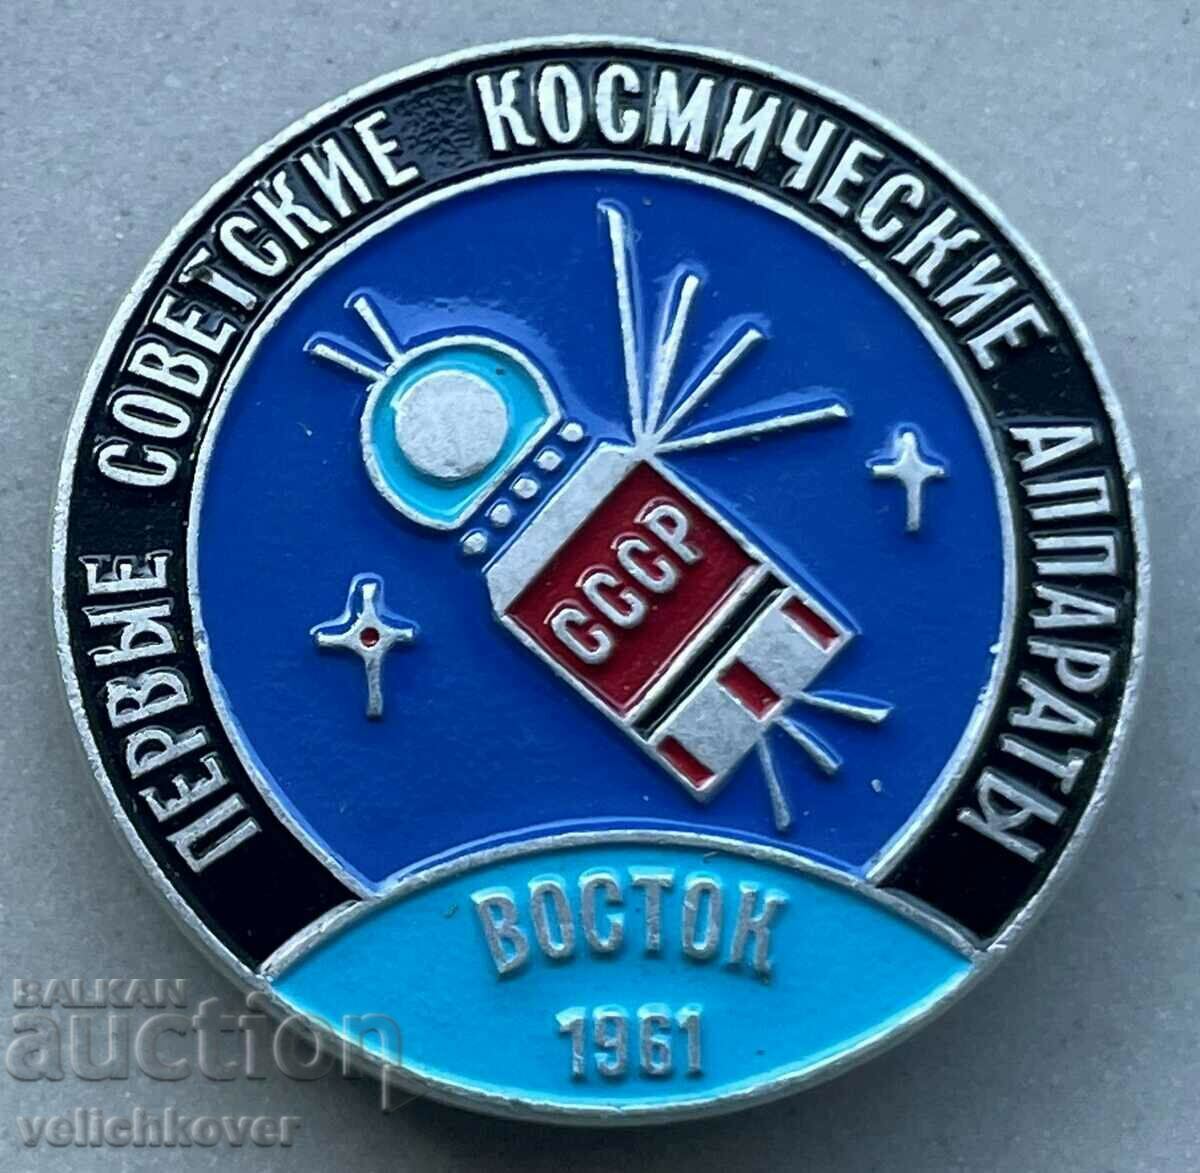 34019 Διαστημικό σήμα ΕΣΣΔ Πρώτο διαστημόπλοιο Vostok